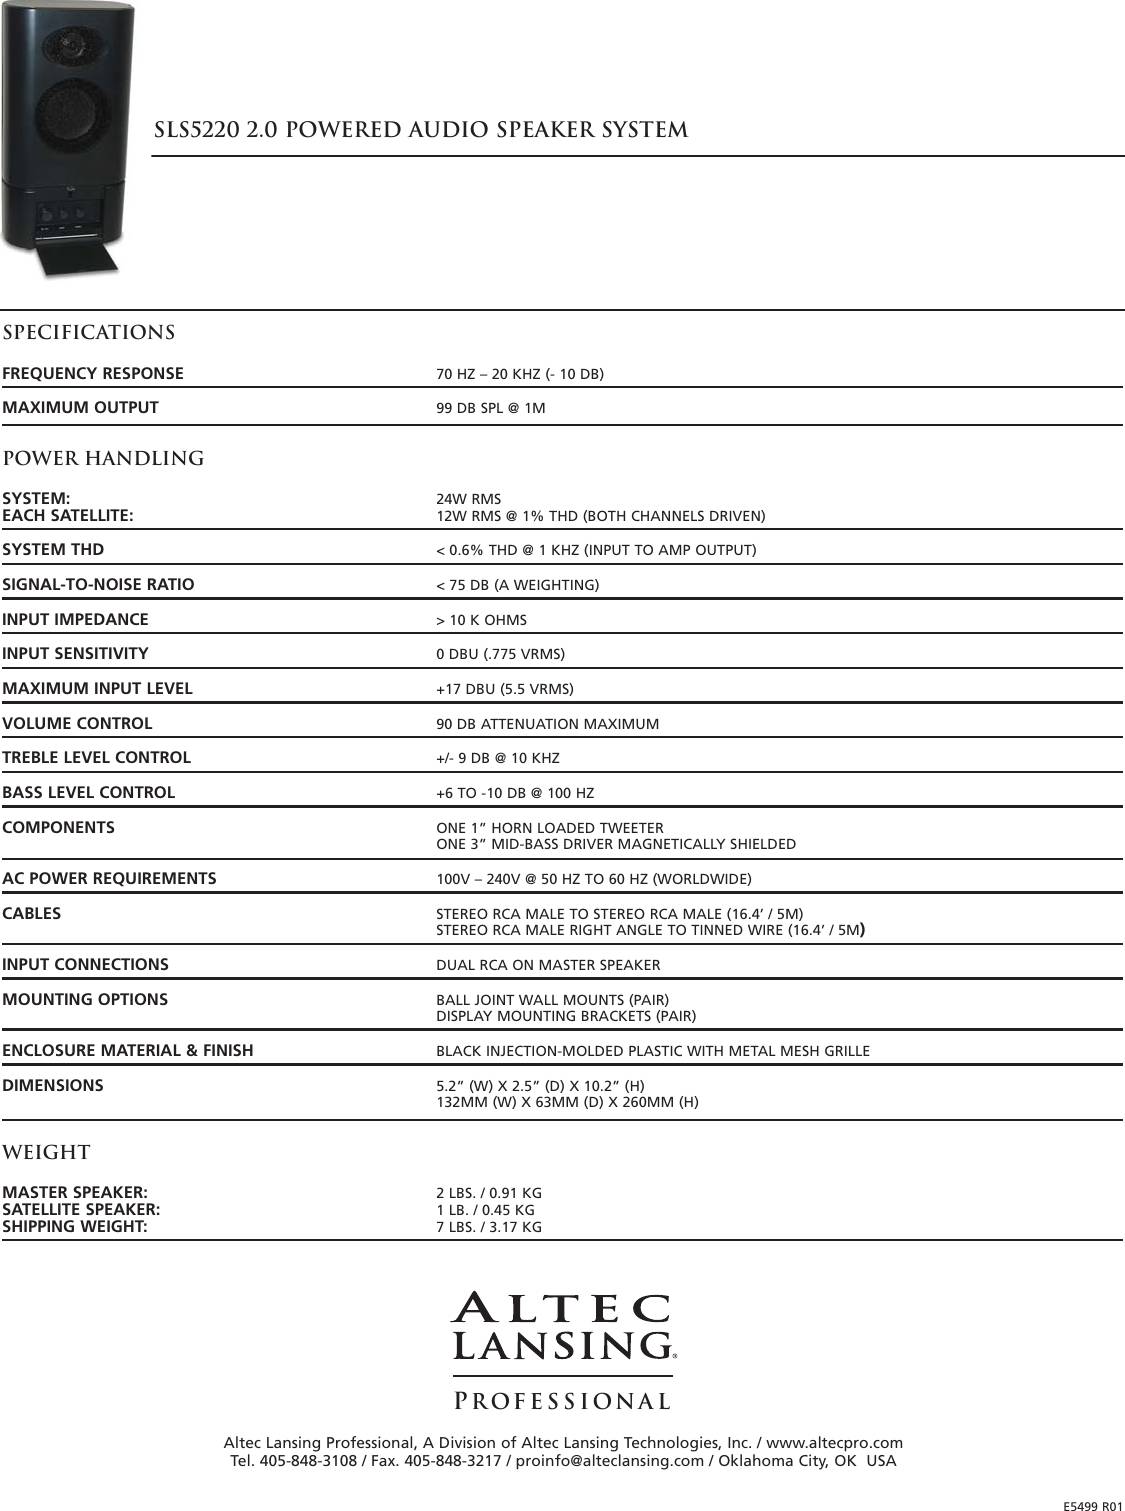 Altec Lansing SLS5220